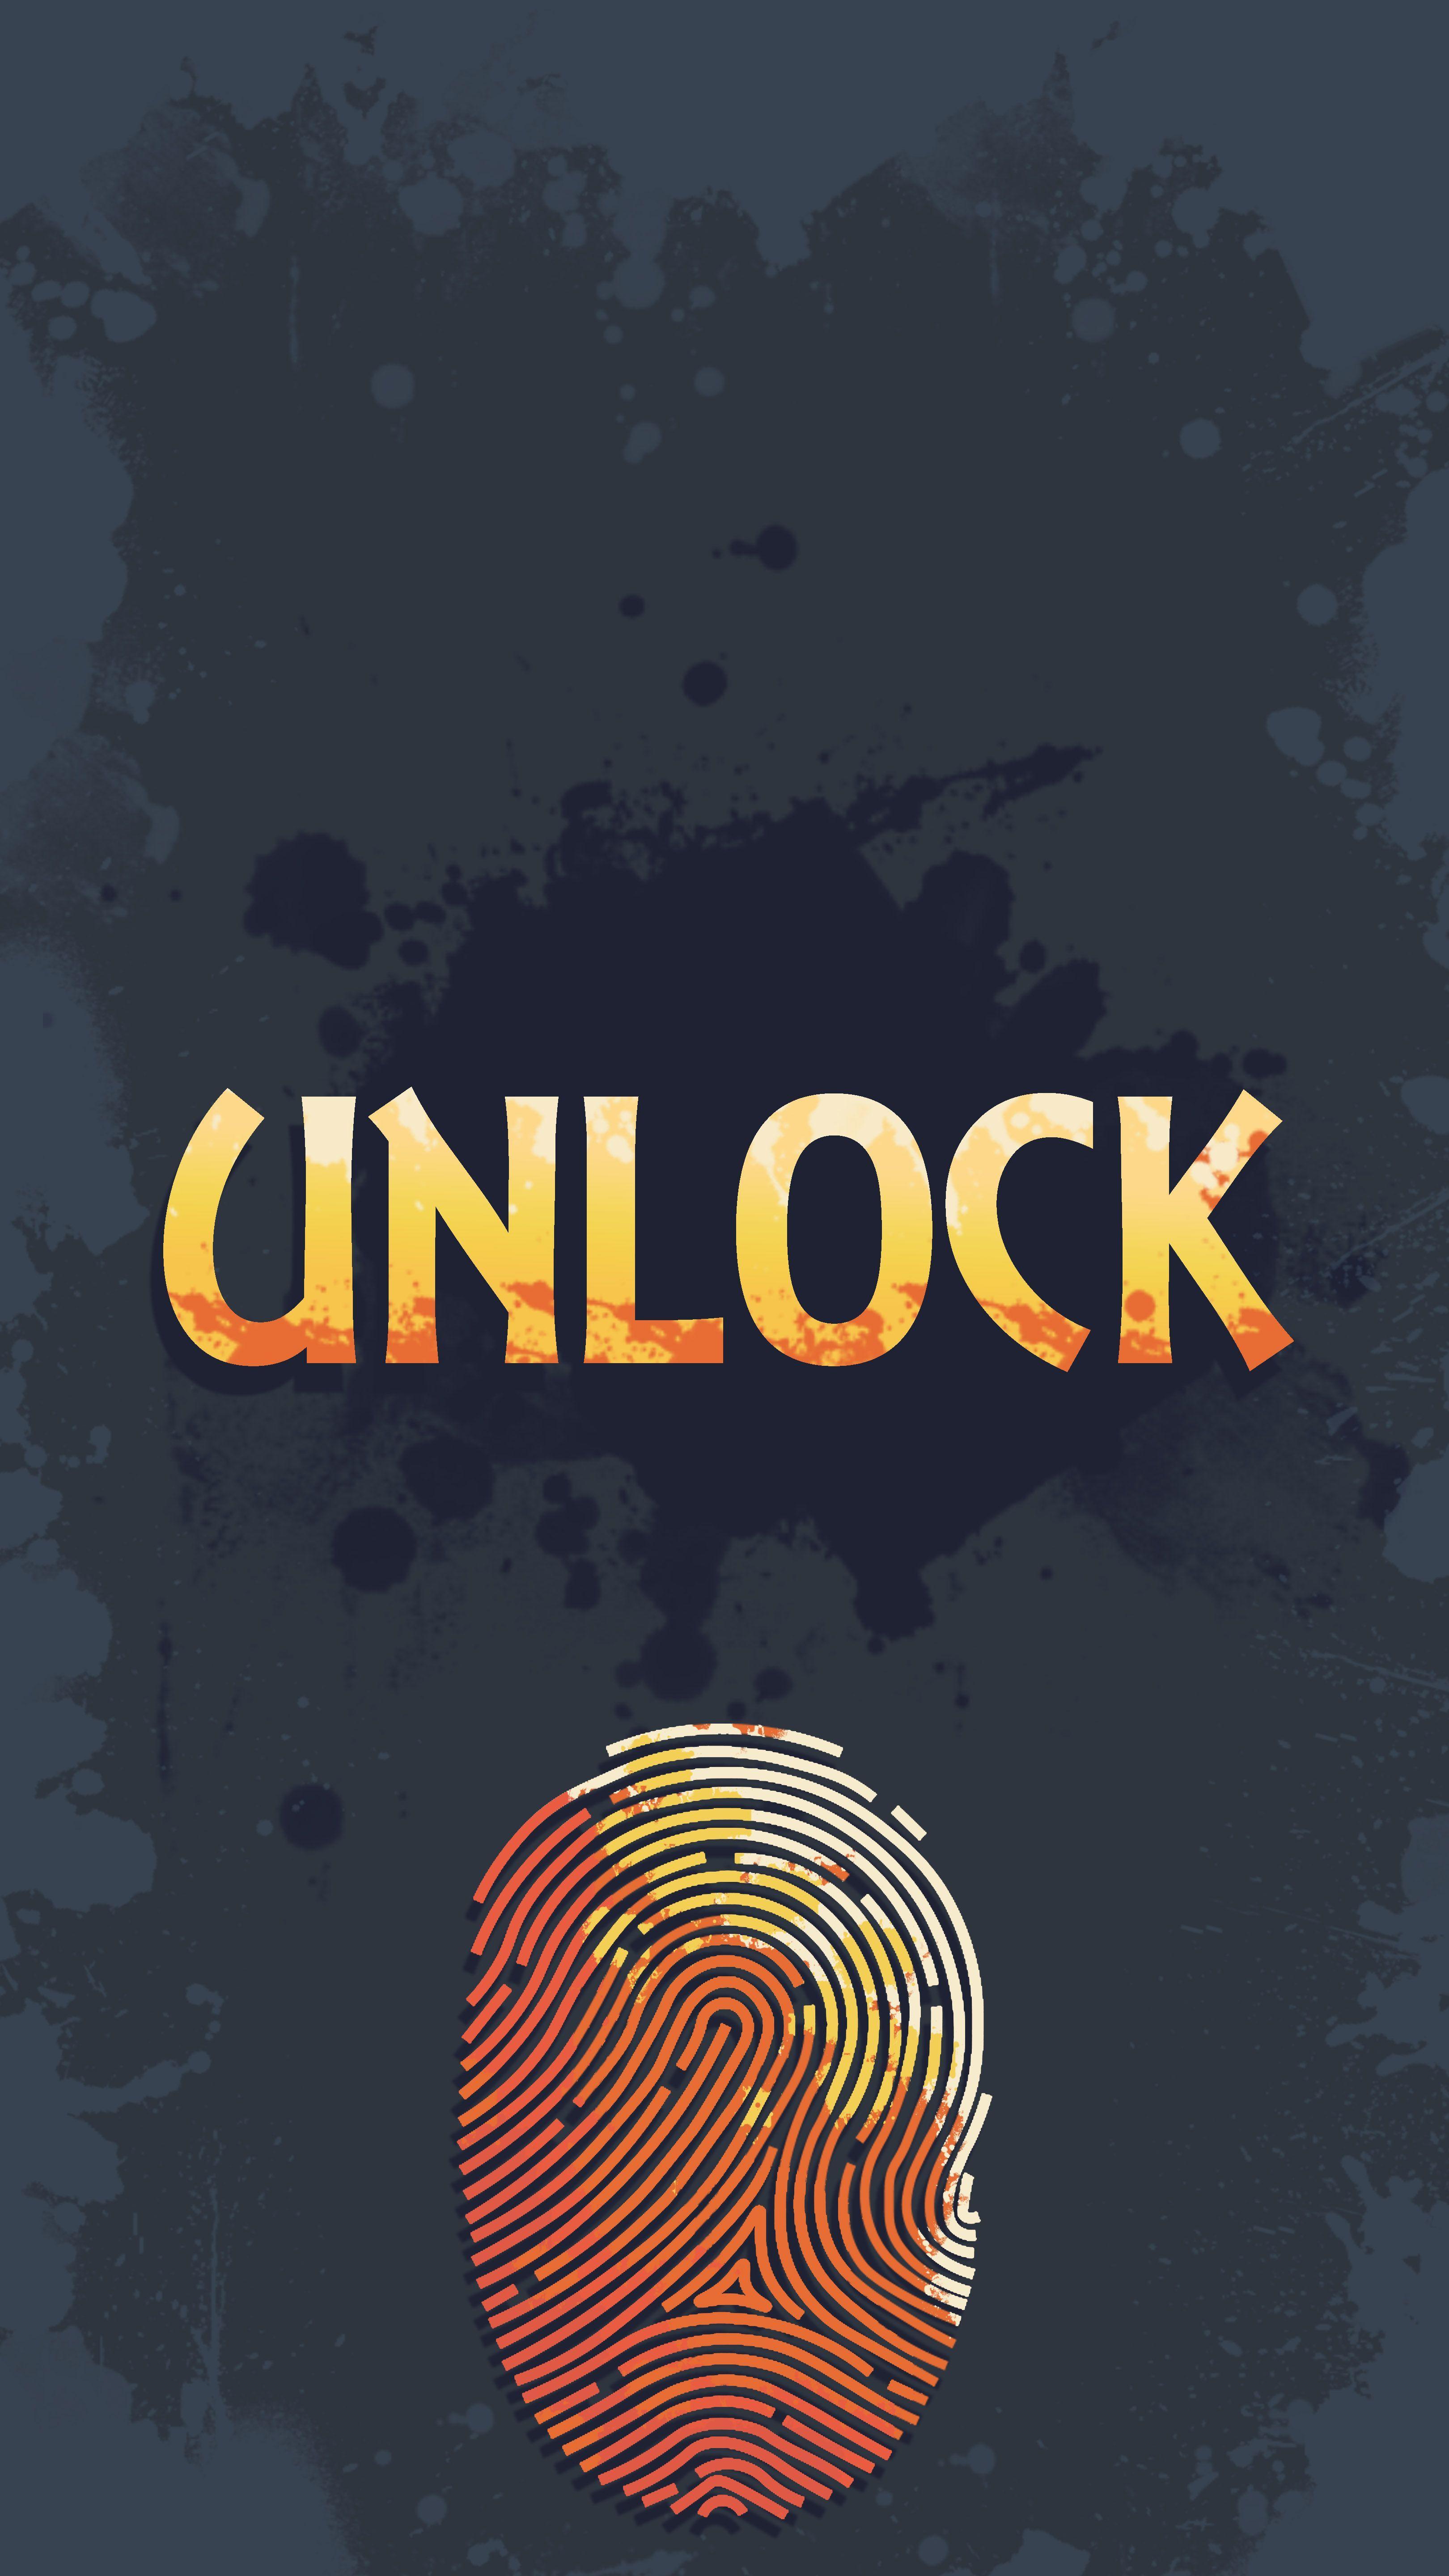 Just Unlock Me Unlock screen wallpaper by SpaceKidoofficial on DeviantArt